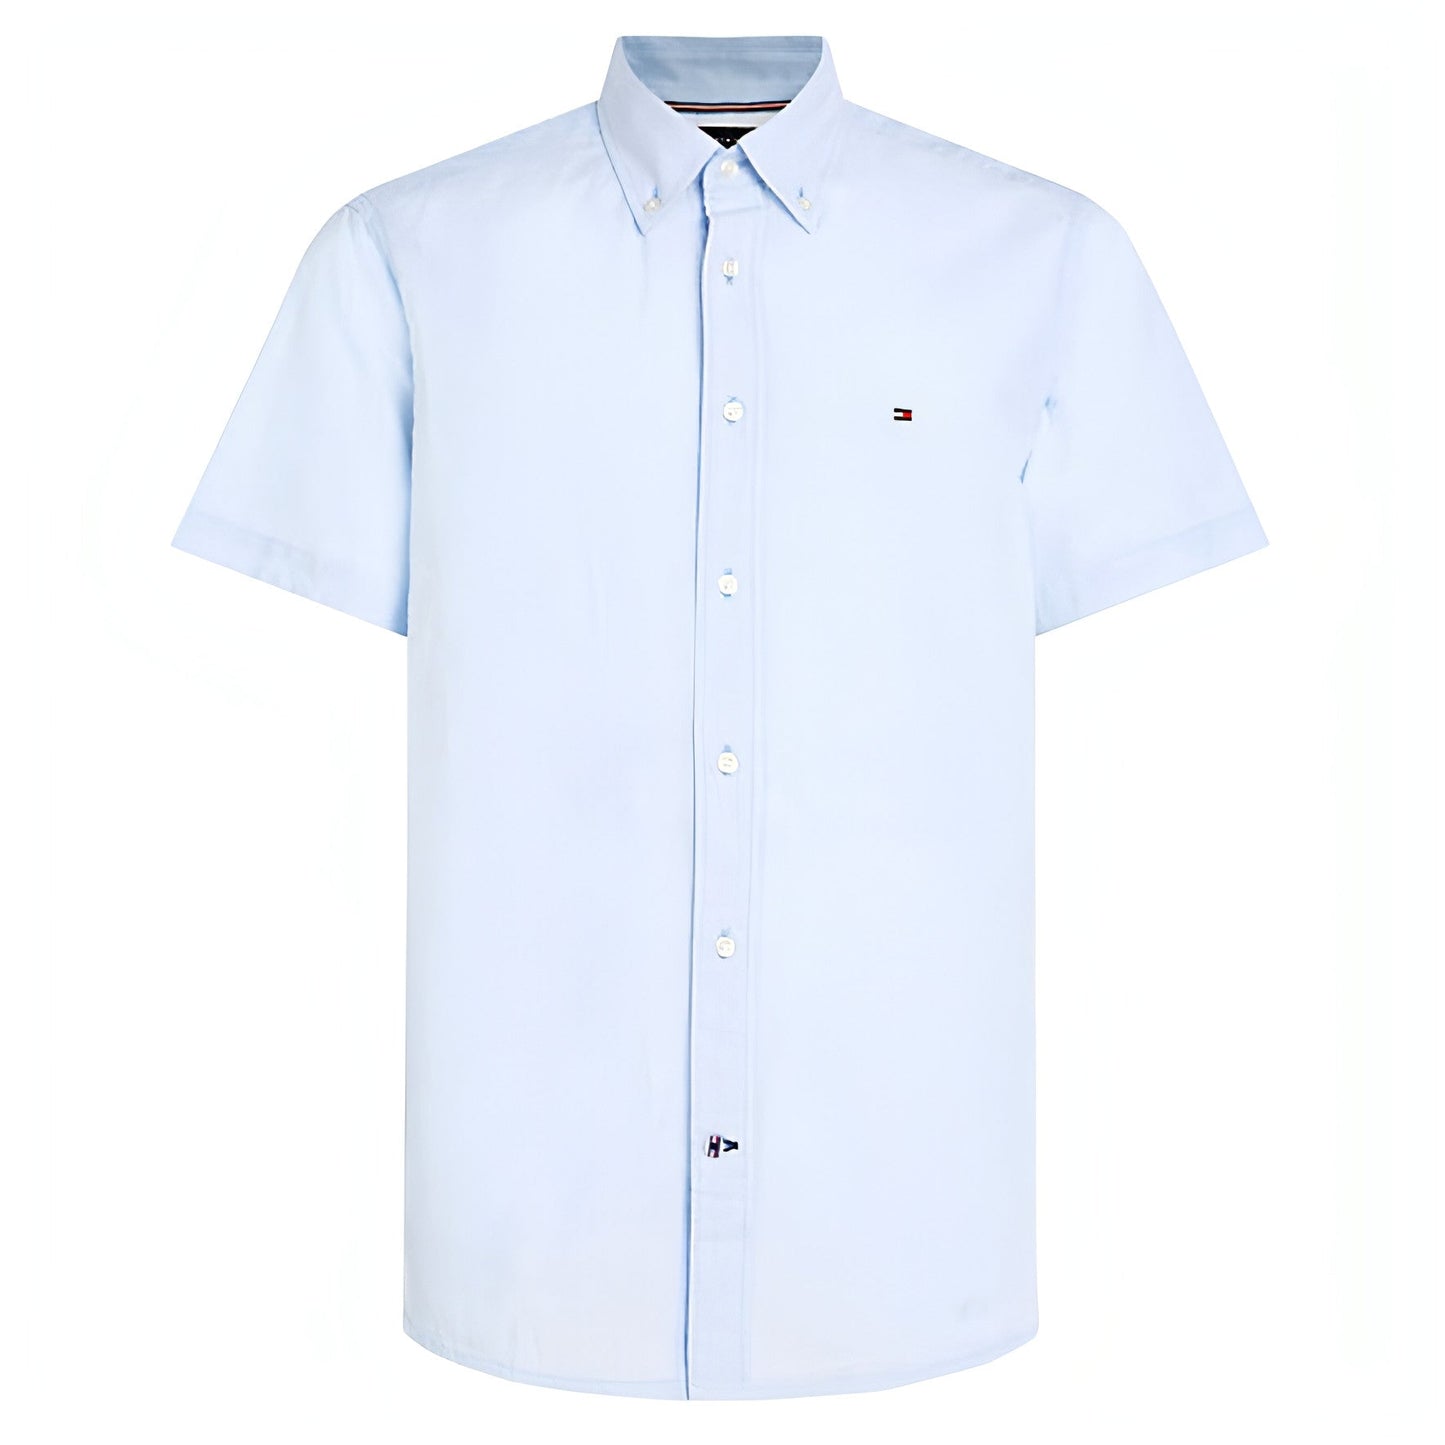 TOMMY HILFIGER vyriški mėlyni marškinėliai trumpomis rankovėmis Airy cotton linen rf shirt s/s